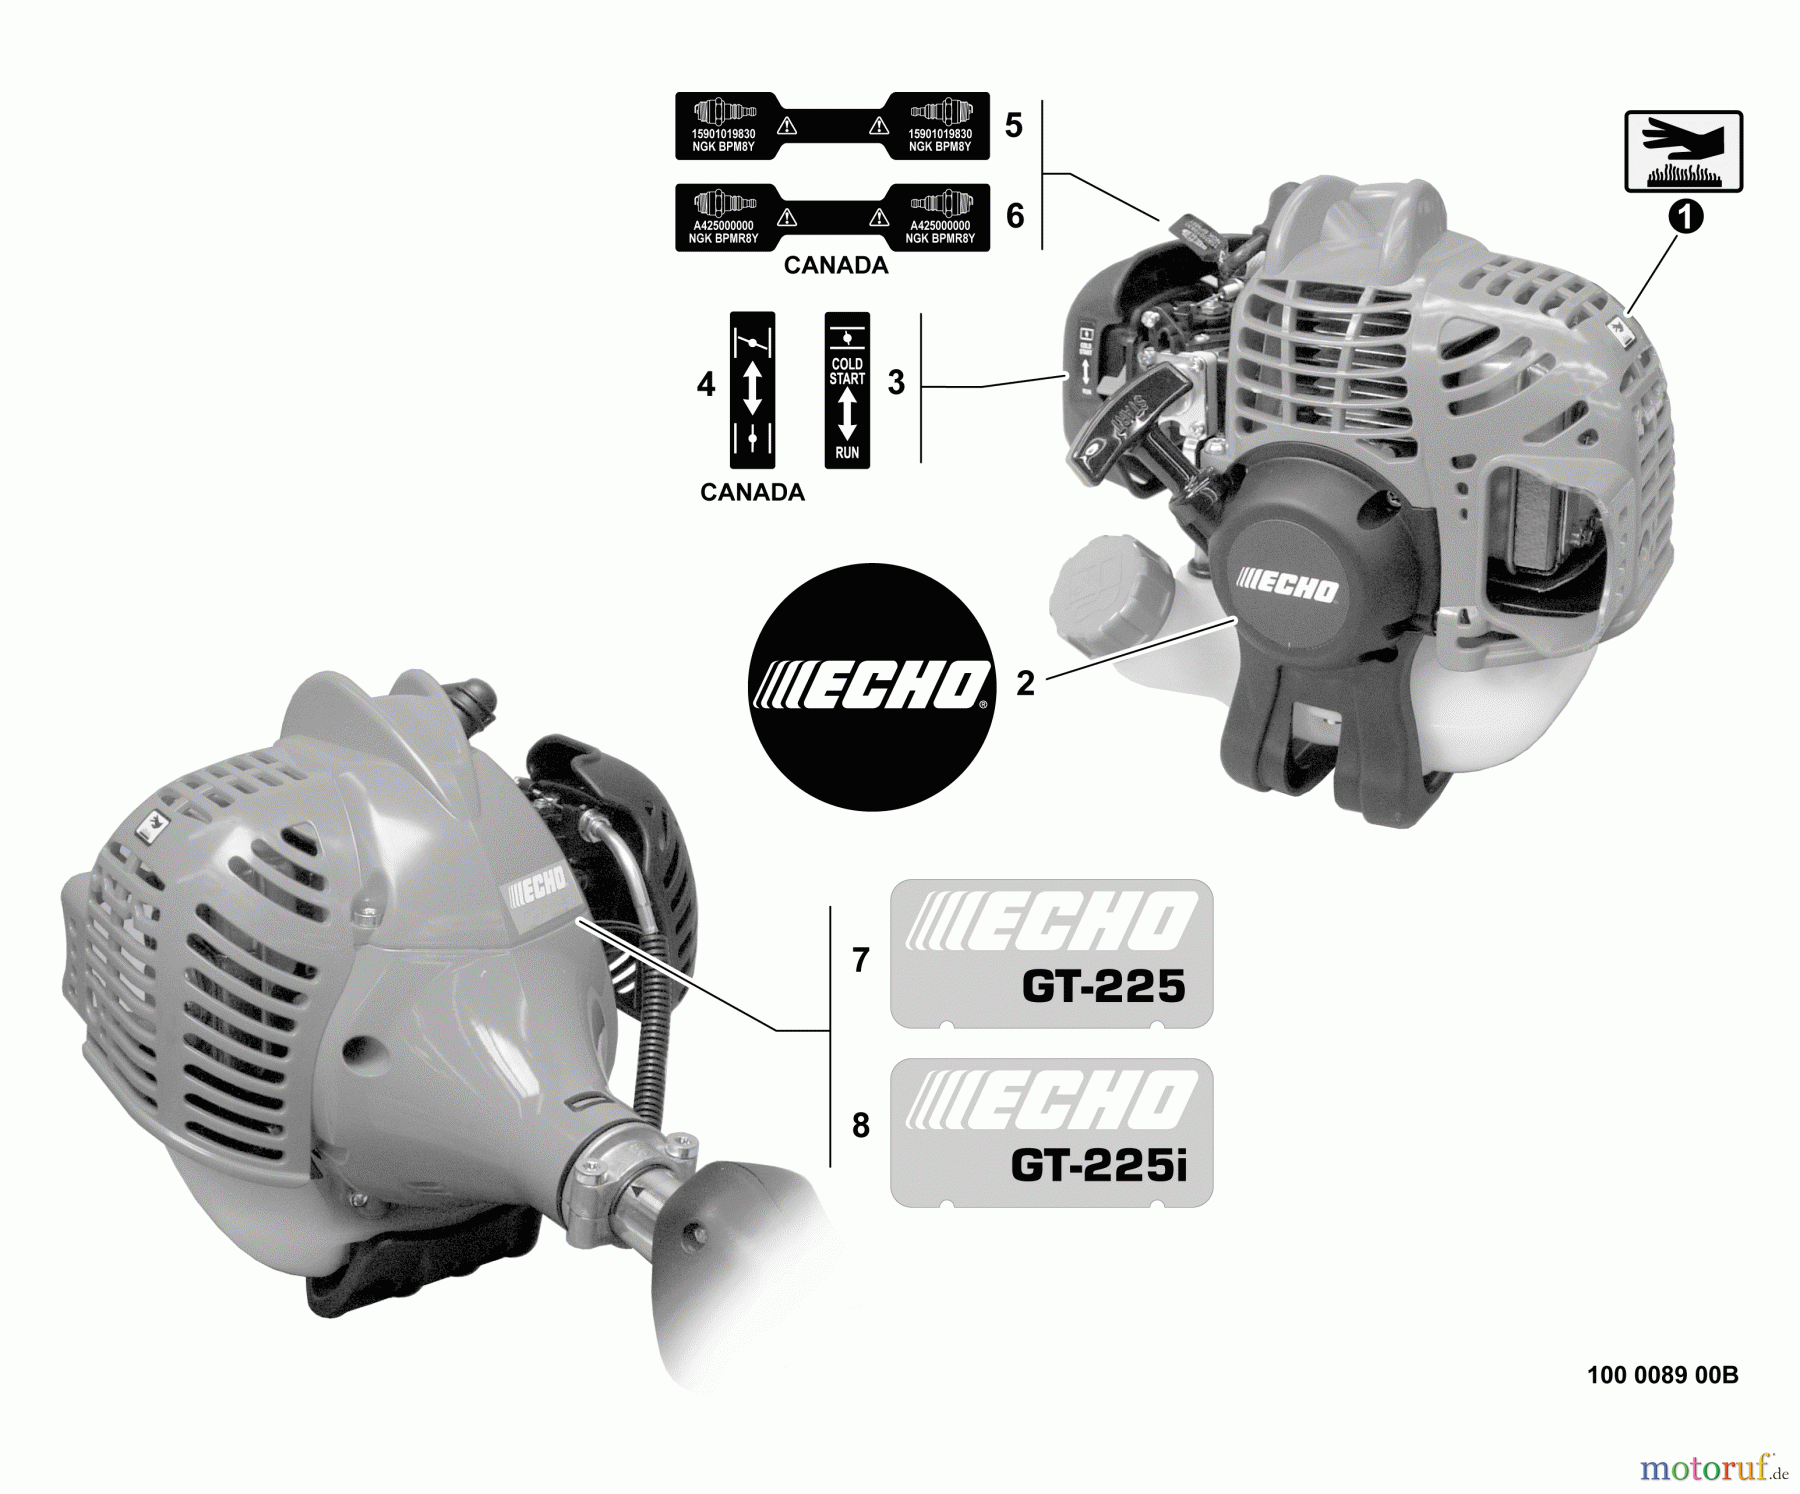  Echo Trimmer, Faden / Bürste GT-225 - Echo String Trimmer, S/N:S09812001001 - S09812999999 Labels